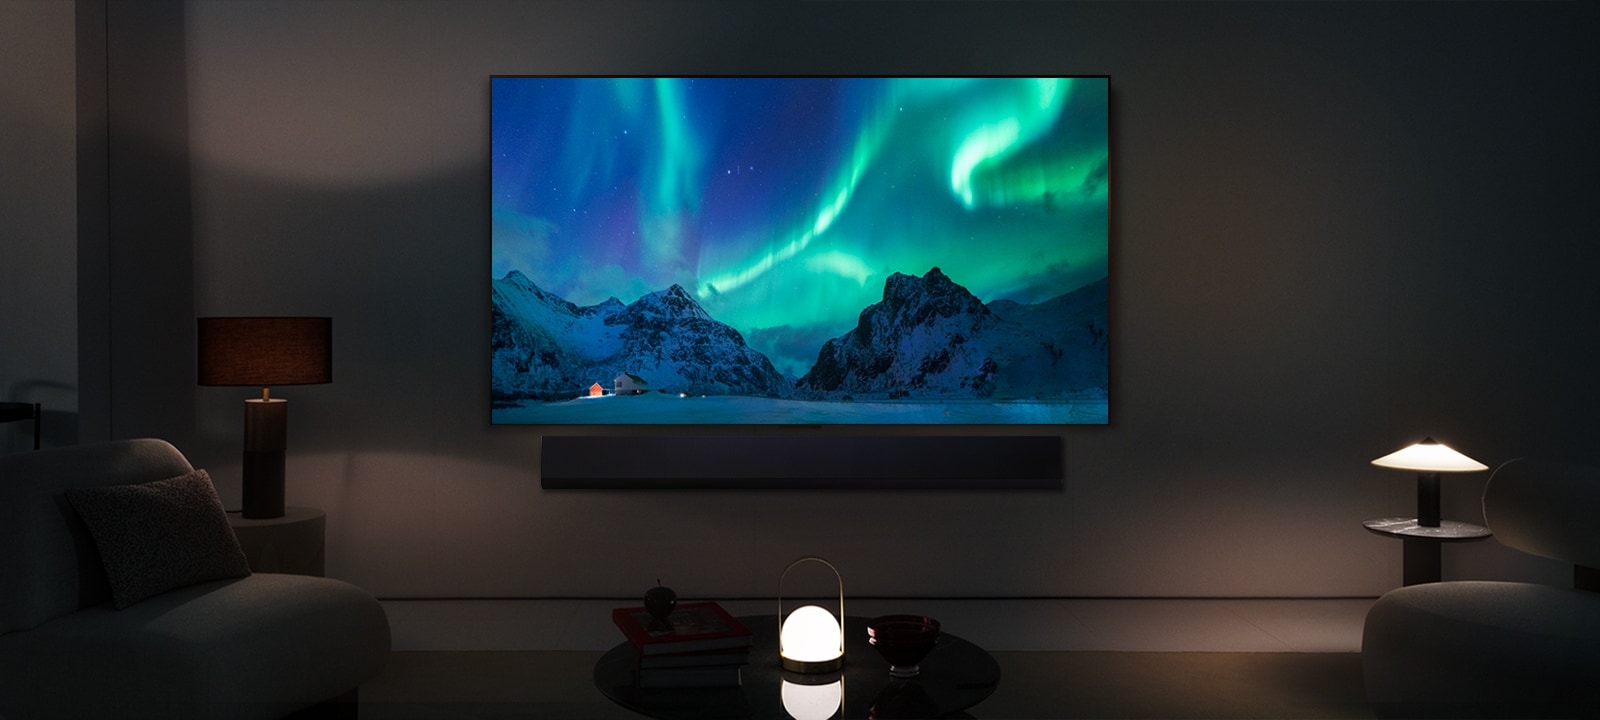 Un LG TV OLED et une barre de son LG dans un salon moderne pendant la nuit. L’écran affiche une image de l’aurore boréale avec une luminosité idéale.